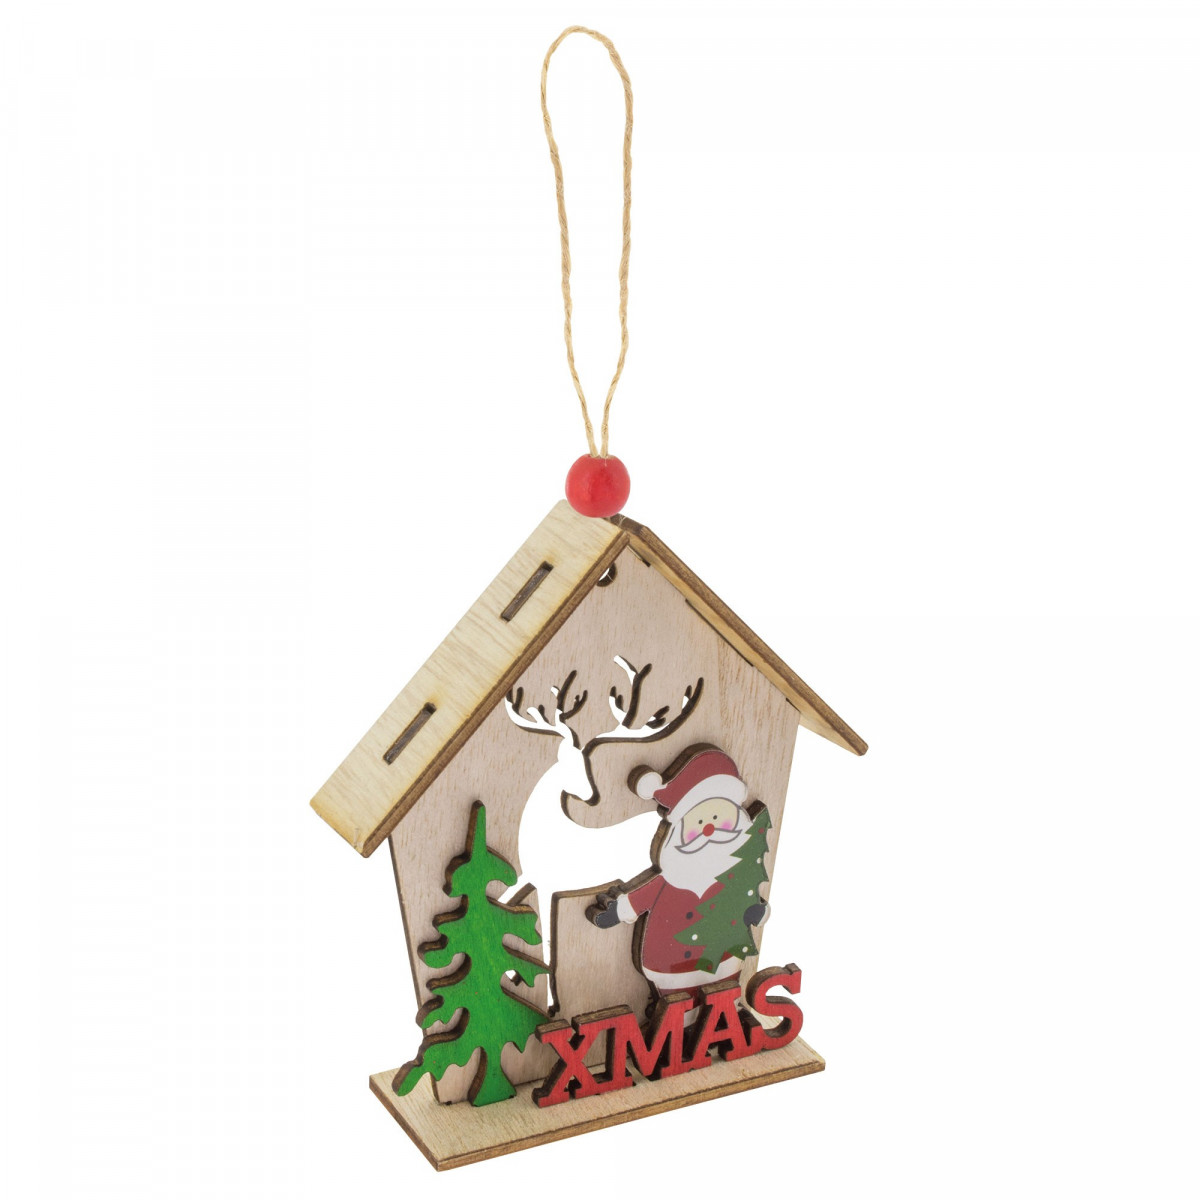 Adorno navideño con casita de madera y colgante